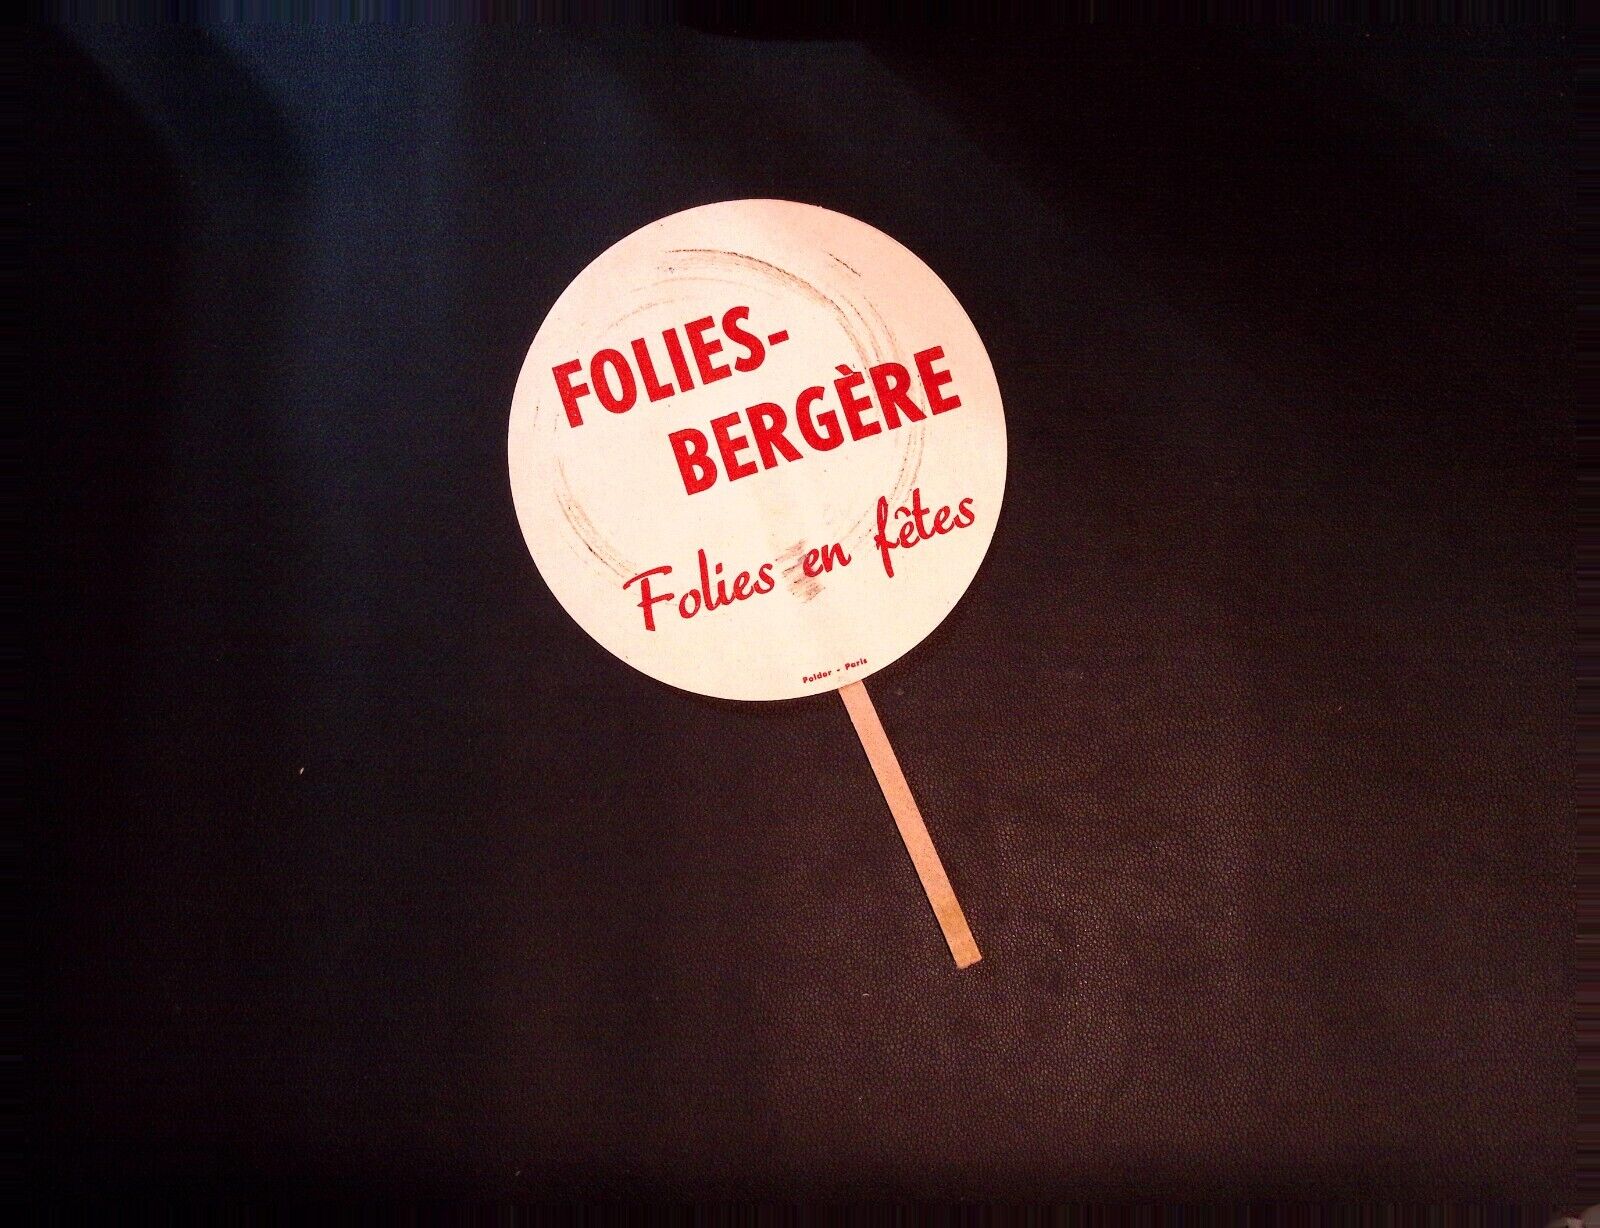 Folies Bergere Folies en Fetes Paris Hand Fan Vintage